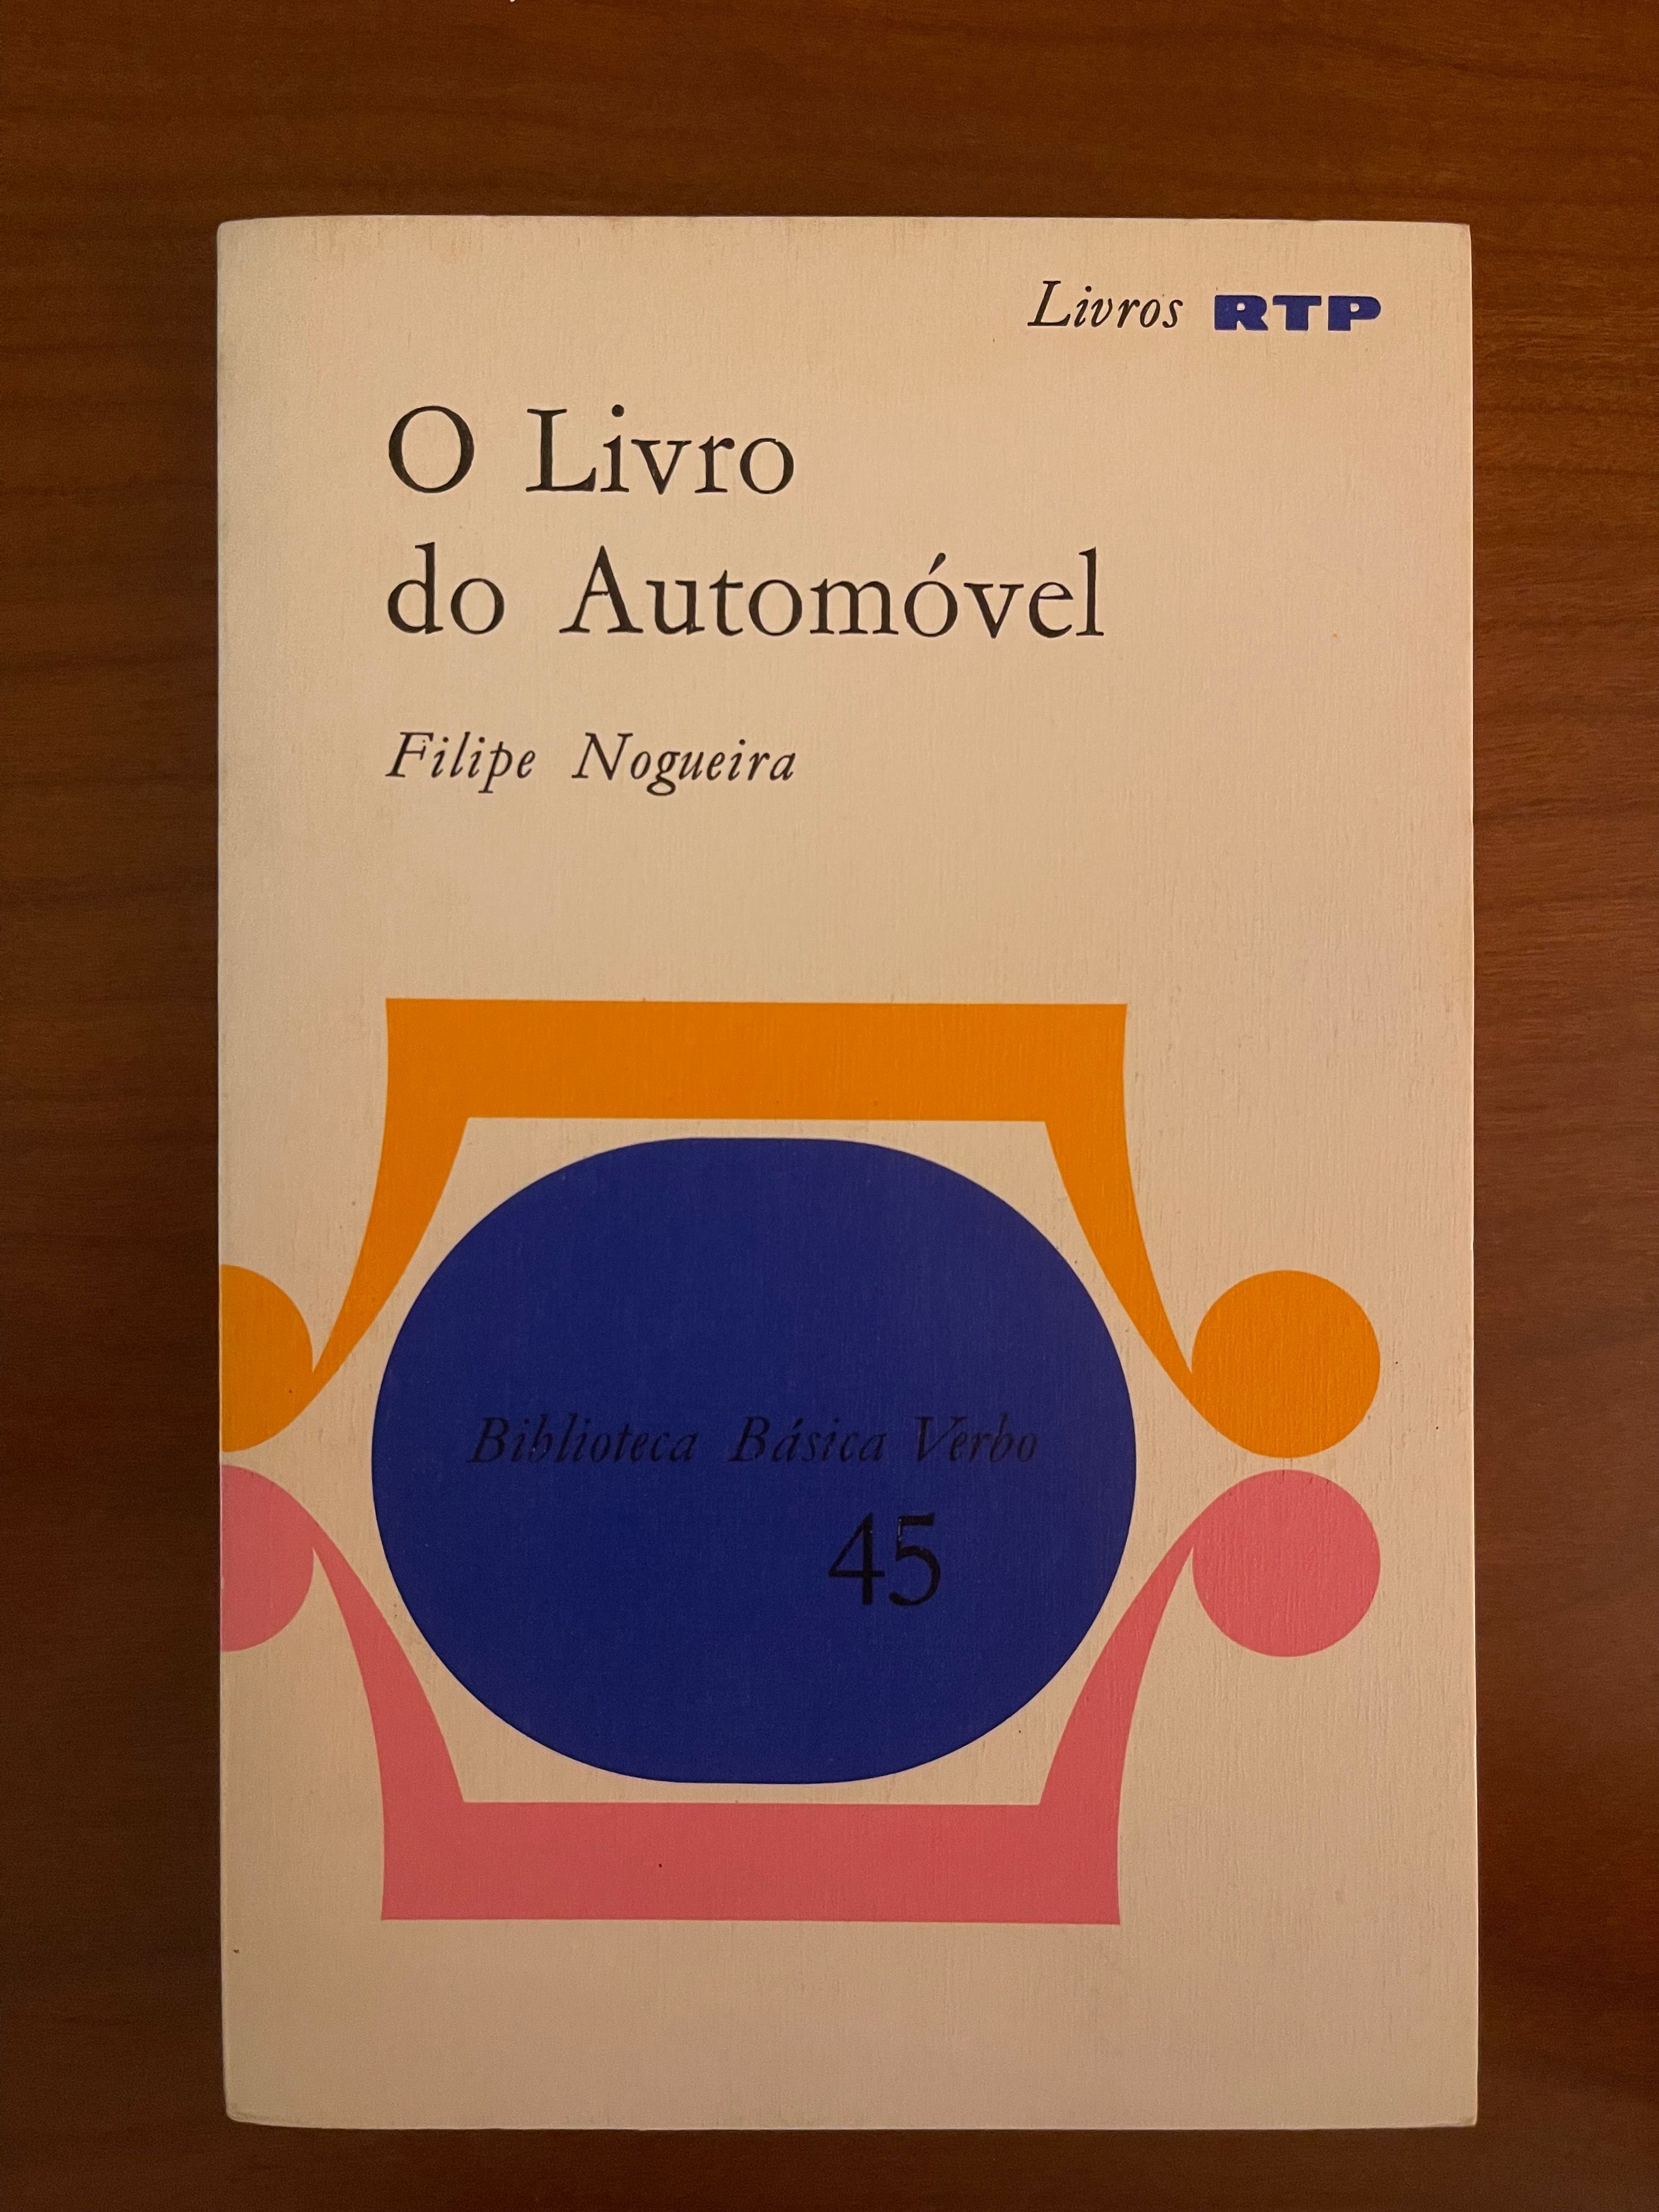 "O Livro do Automóvel", de Filipe Nogueira